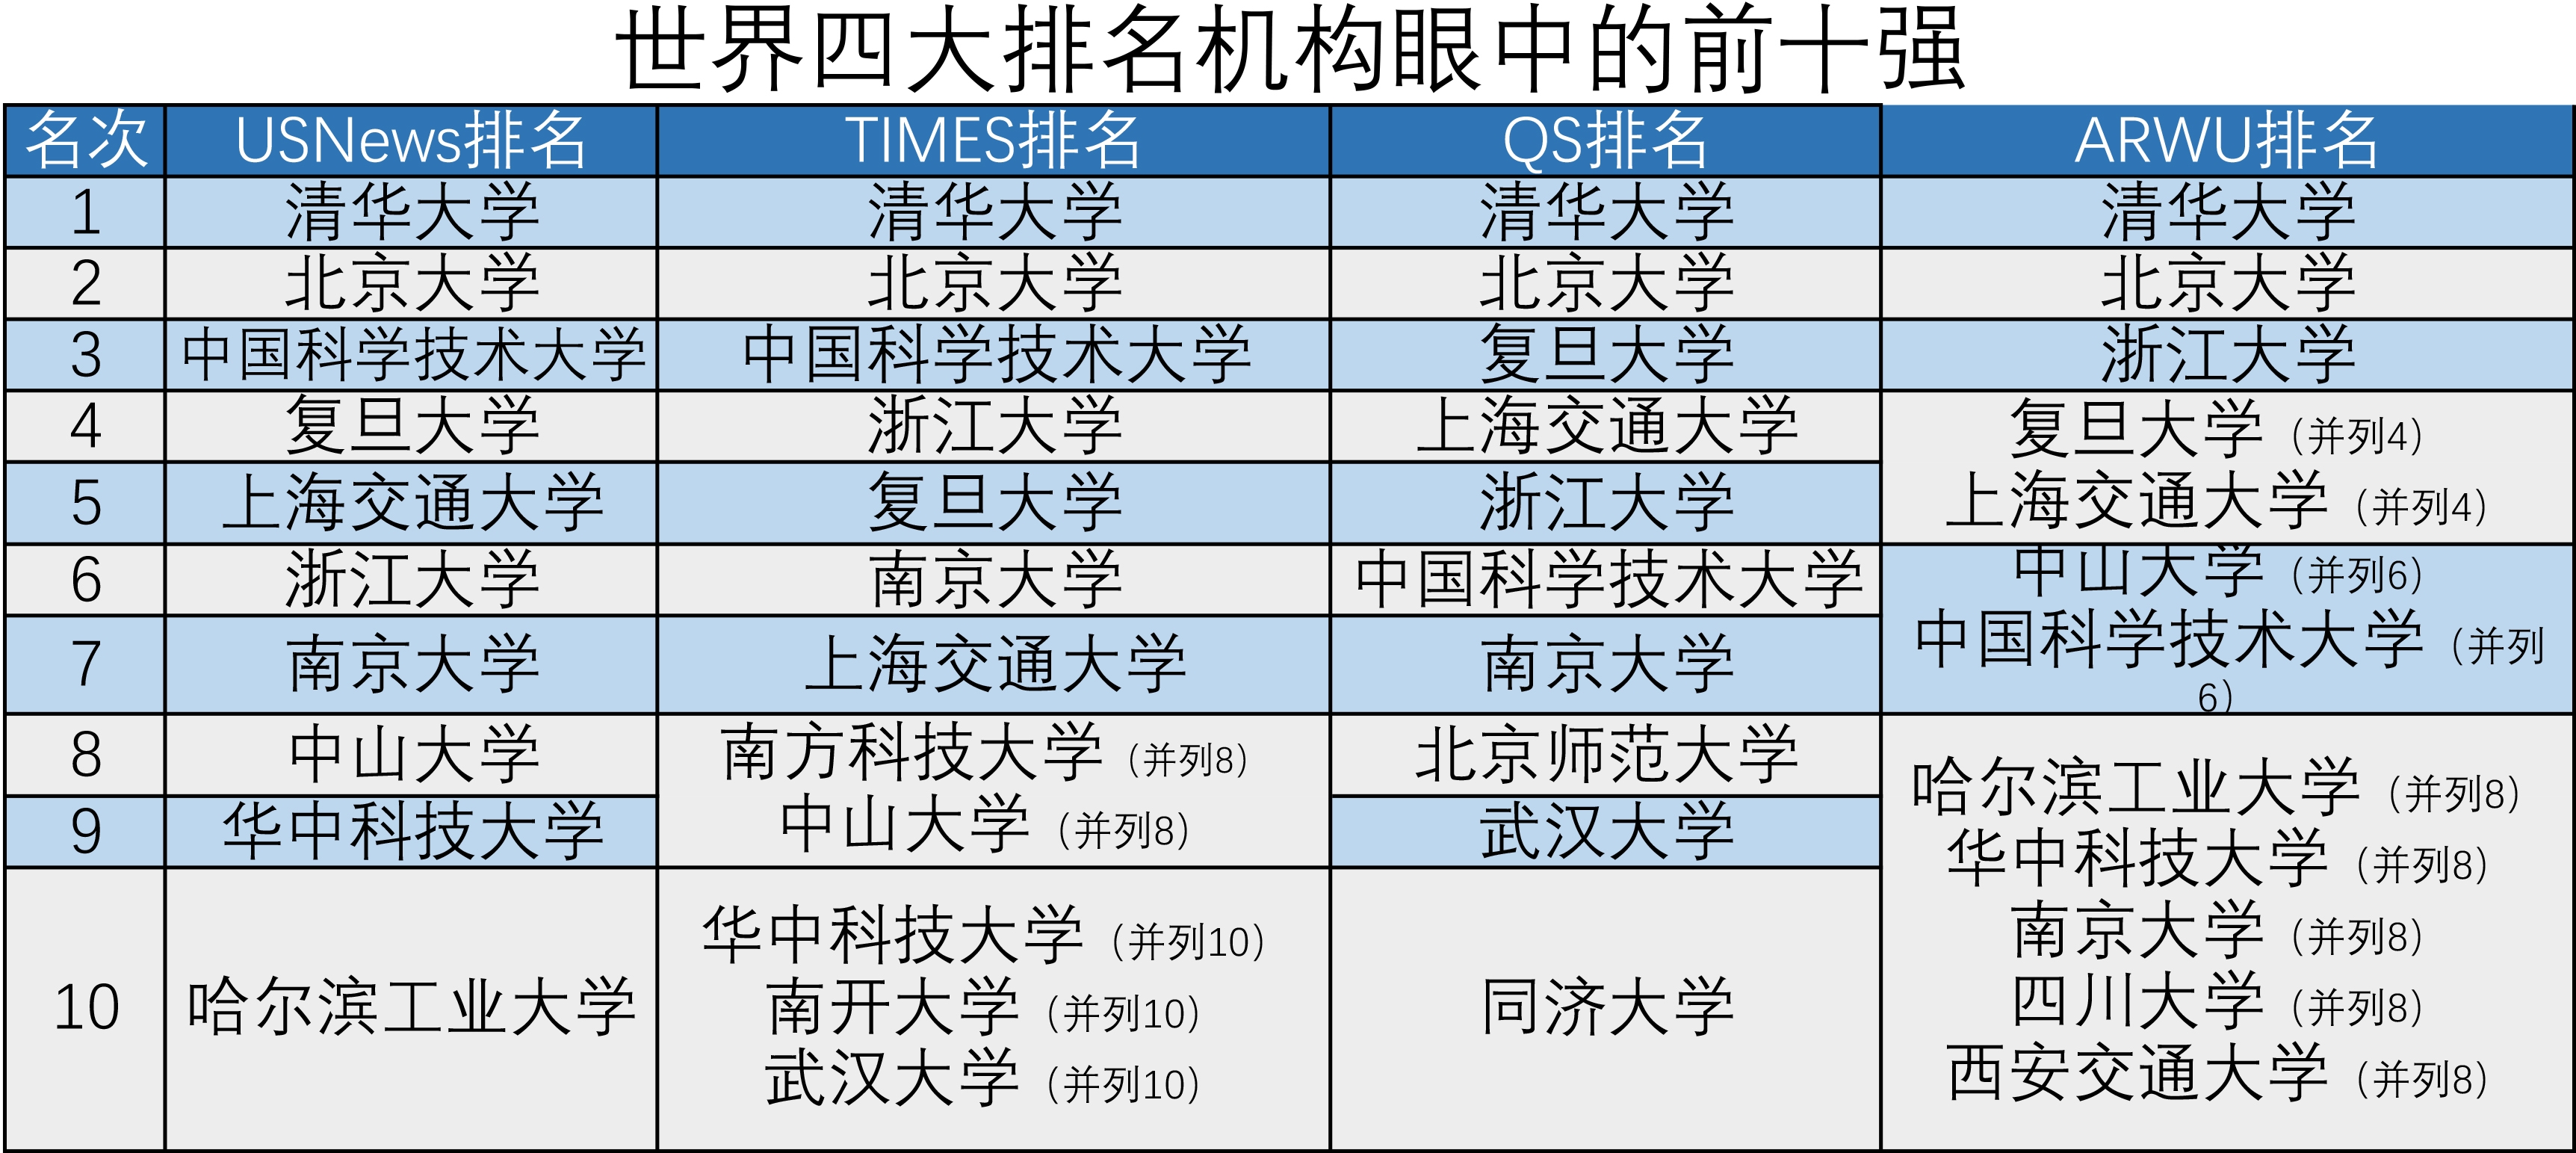 请告诉我上海排名靠前的几家证券公司.